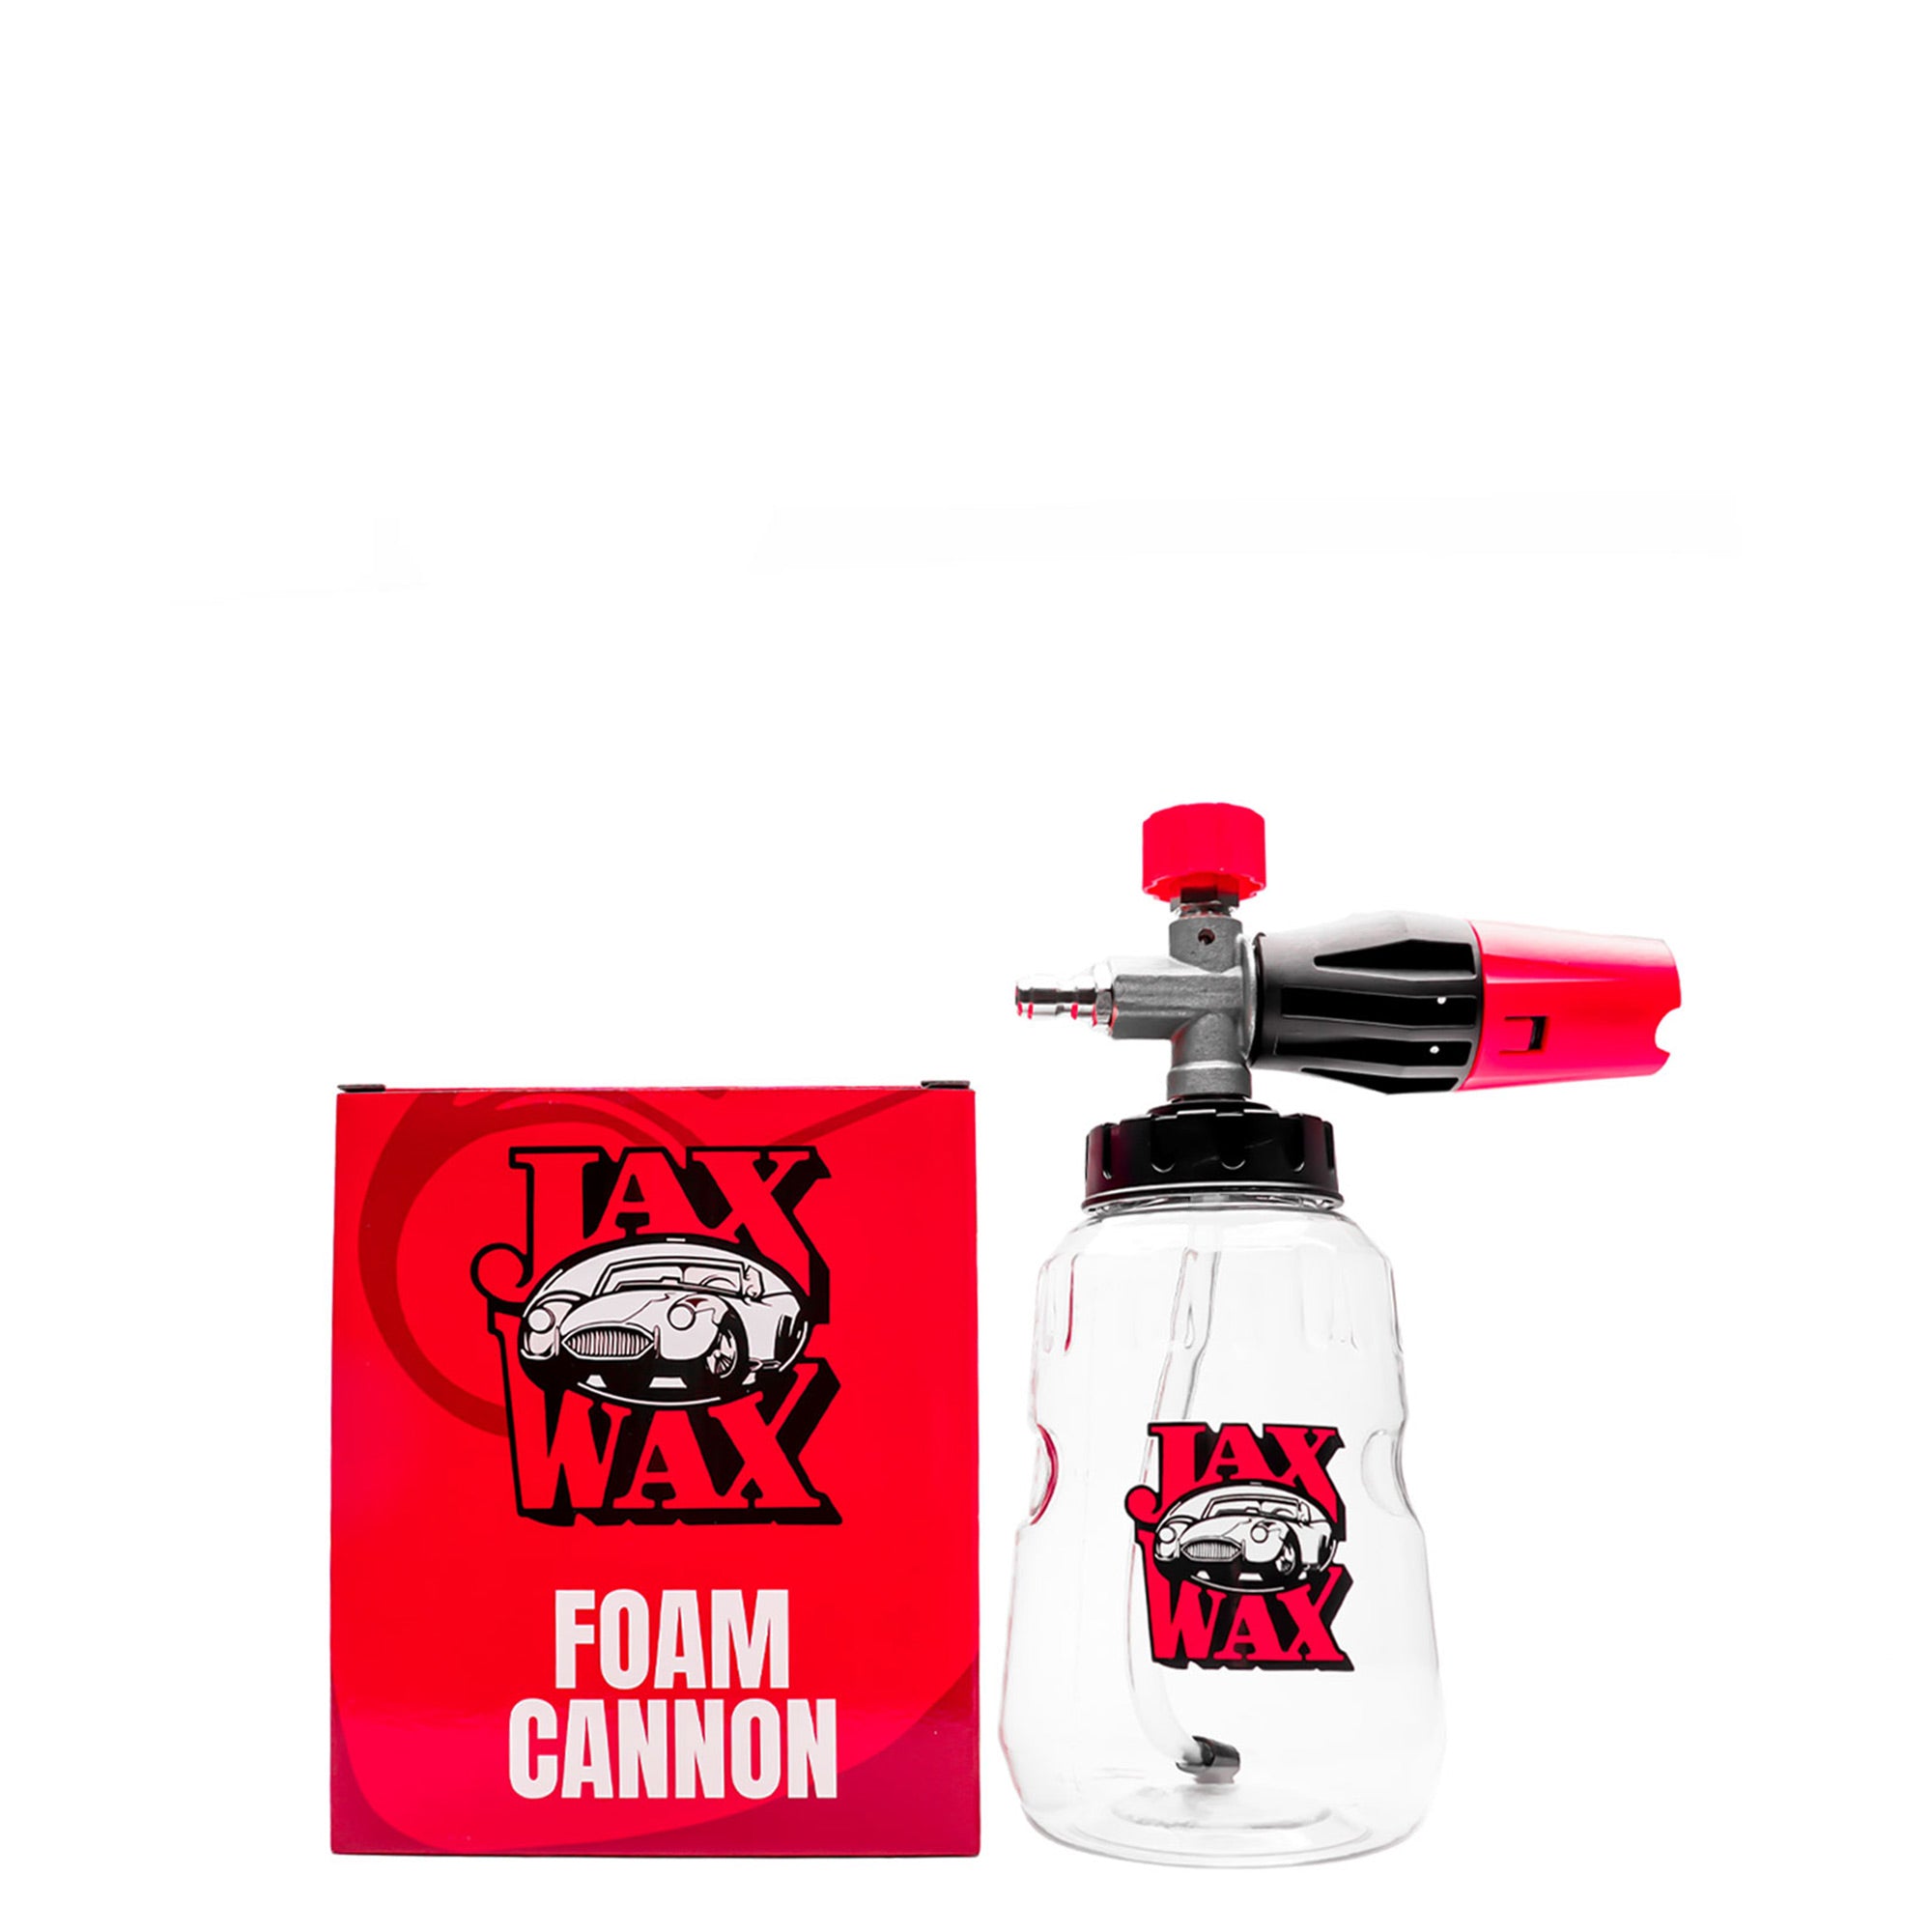 Jax Wax, Pro Foam Cannon, Foam Cannon